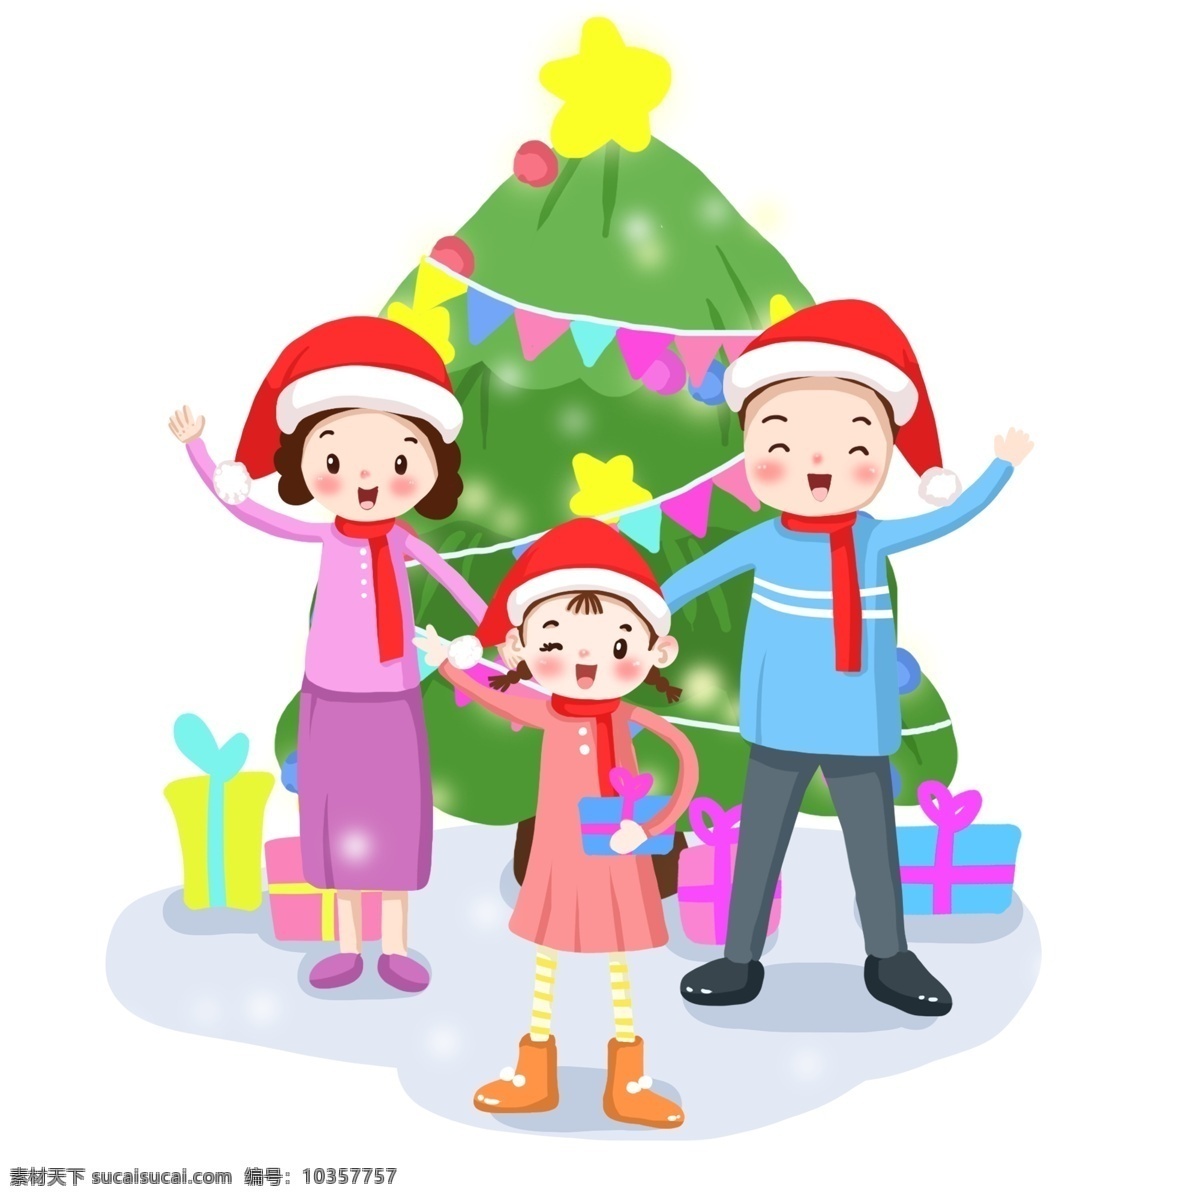 卡通 手绘 圣诞 节日 圣诞节 节日气氛 一家 三口 戴 帽 人物 圣诞节礼物 松树 圣诞树 一家人